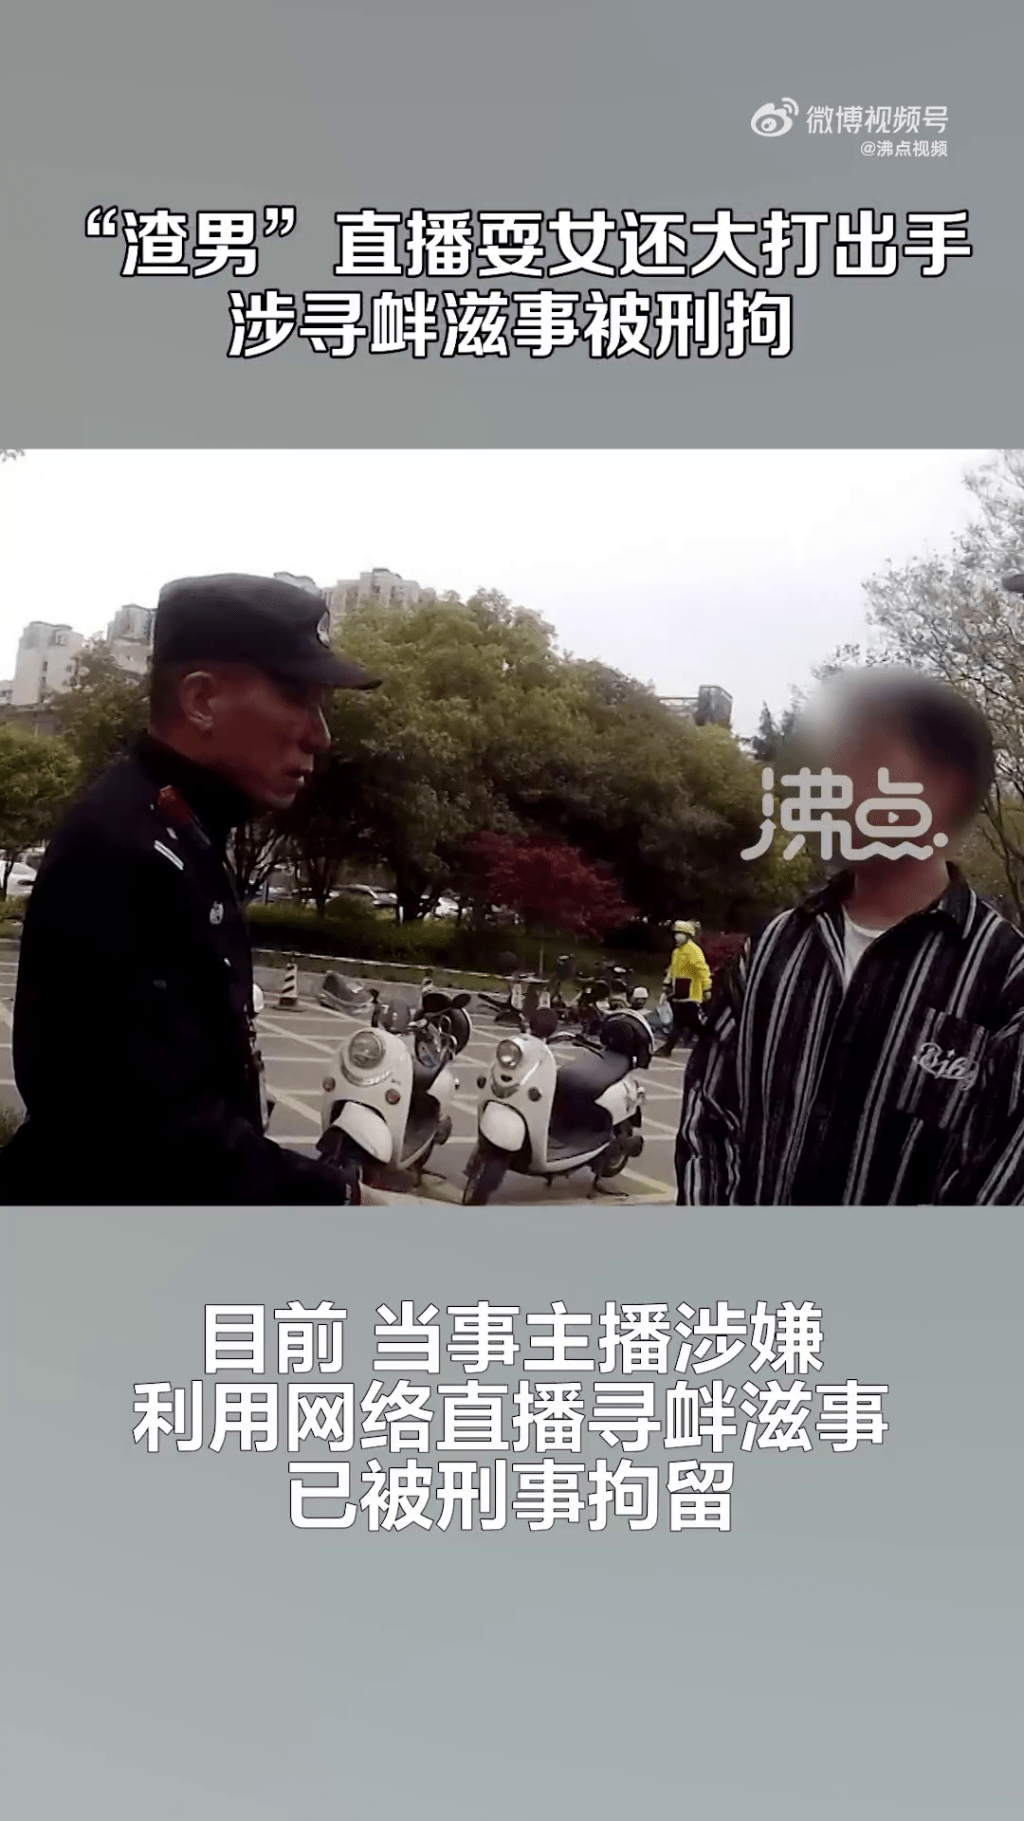 据沸点报道，陈男因「利用信息网络寻衅滋事」被刑拘。